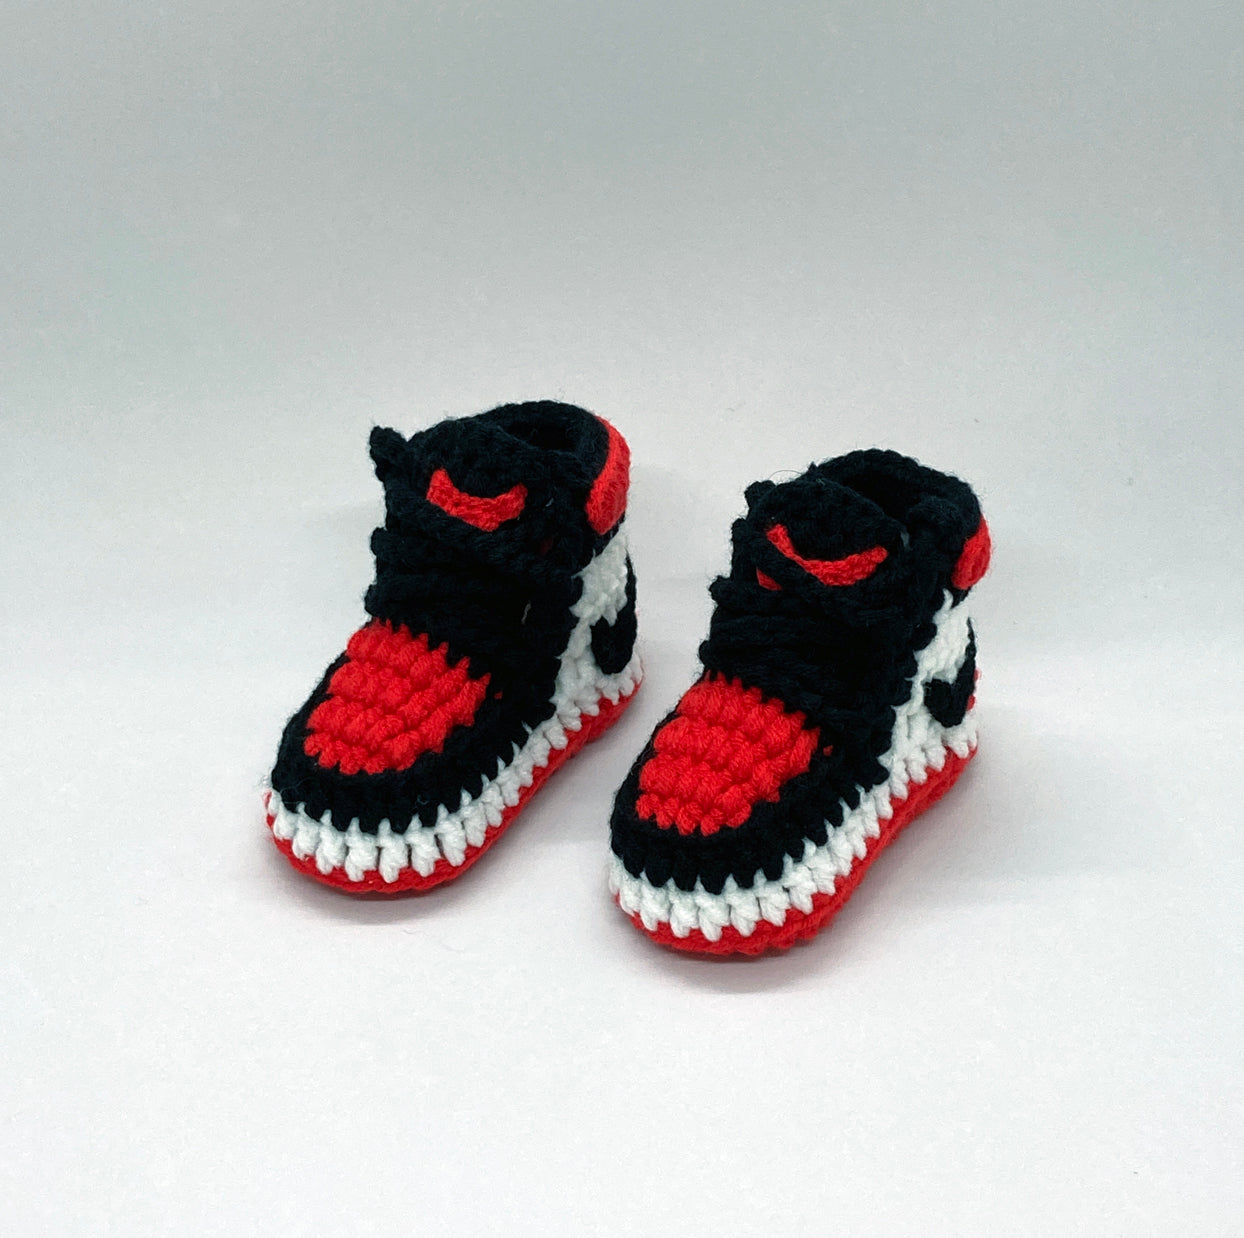 crochet jordan shoes pattern